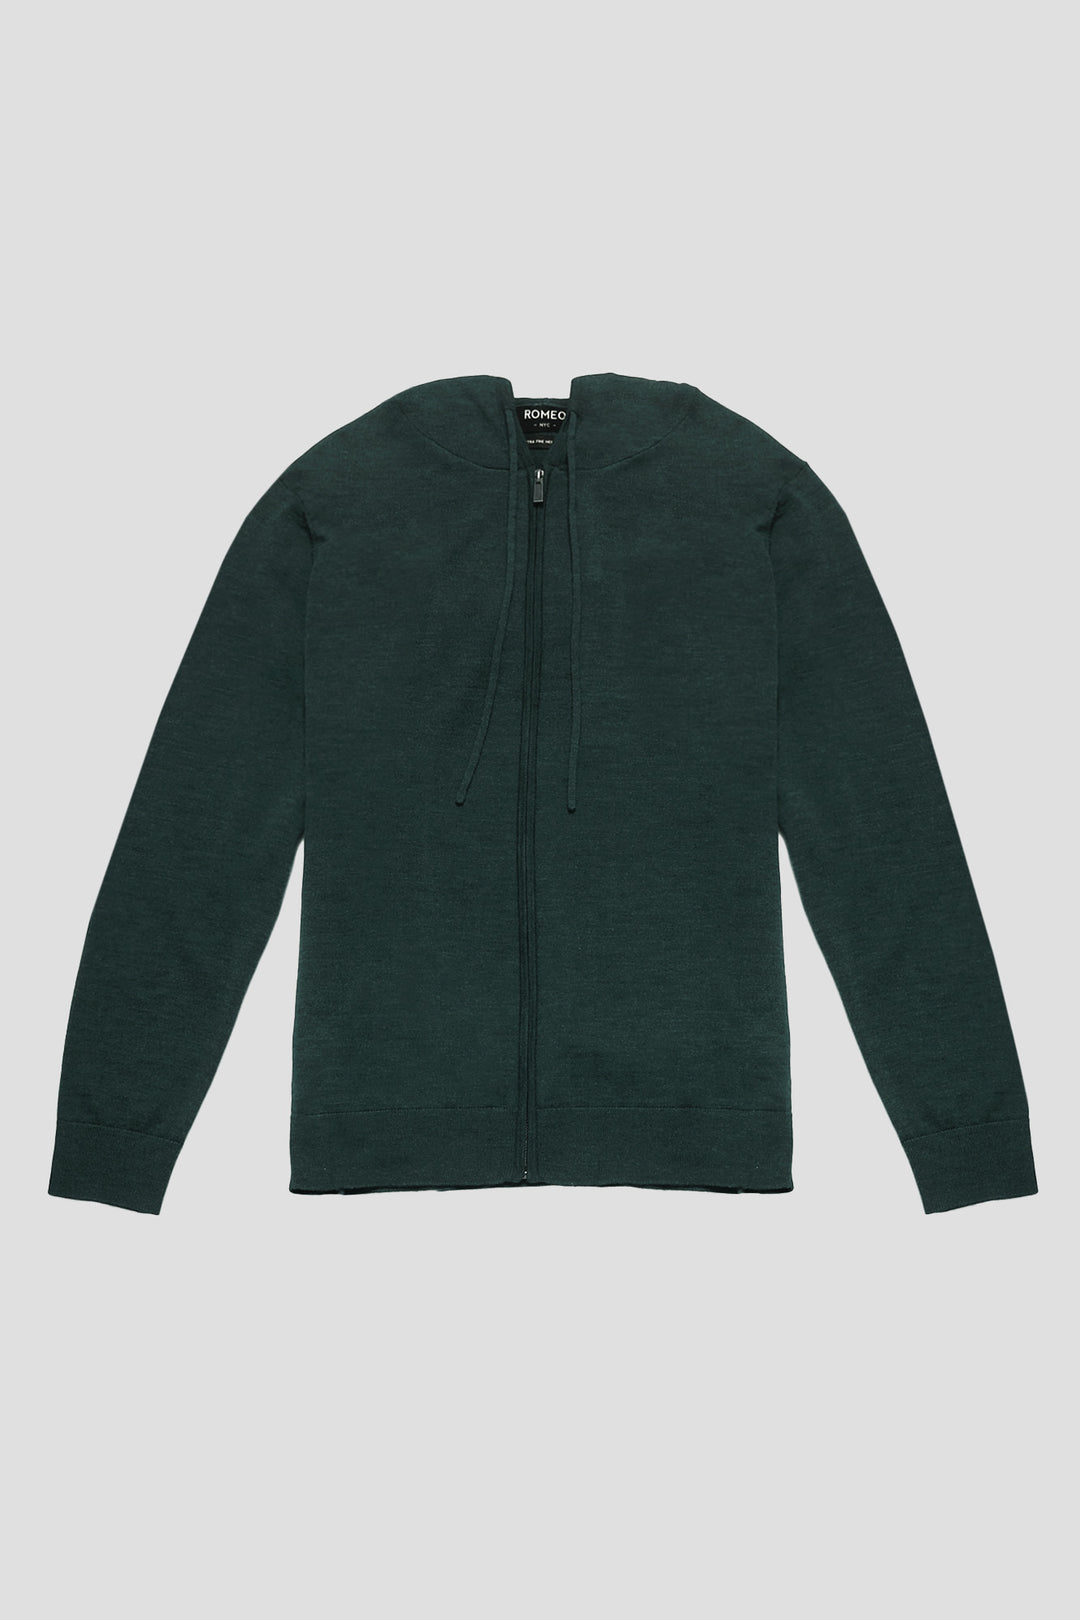 Merino Wool Full Zip Hoodie Sweater - Hunter Green